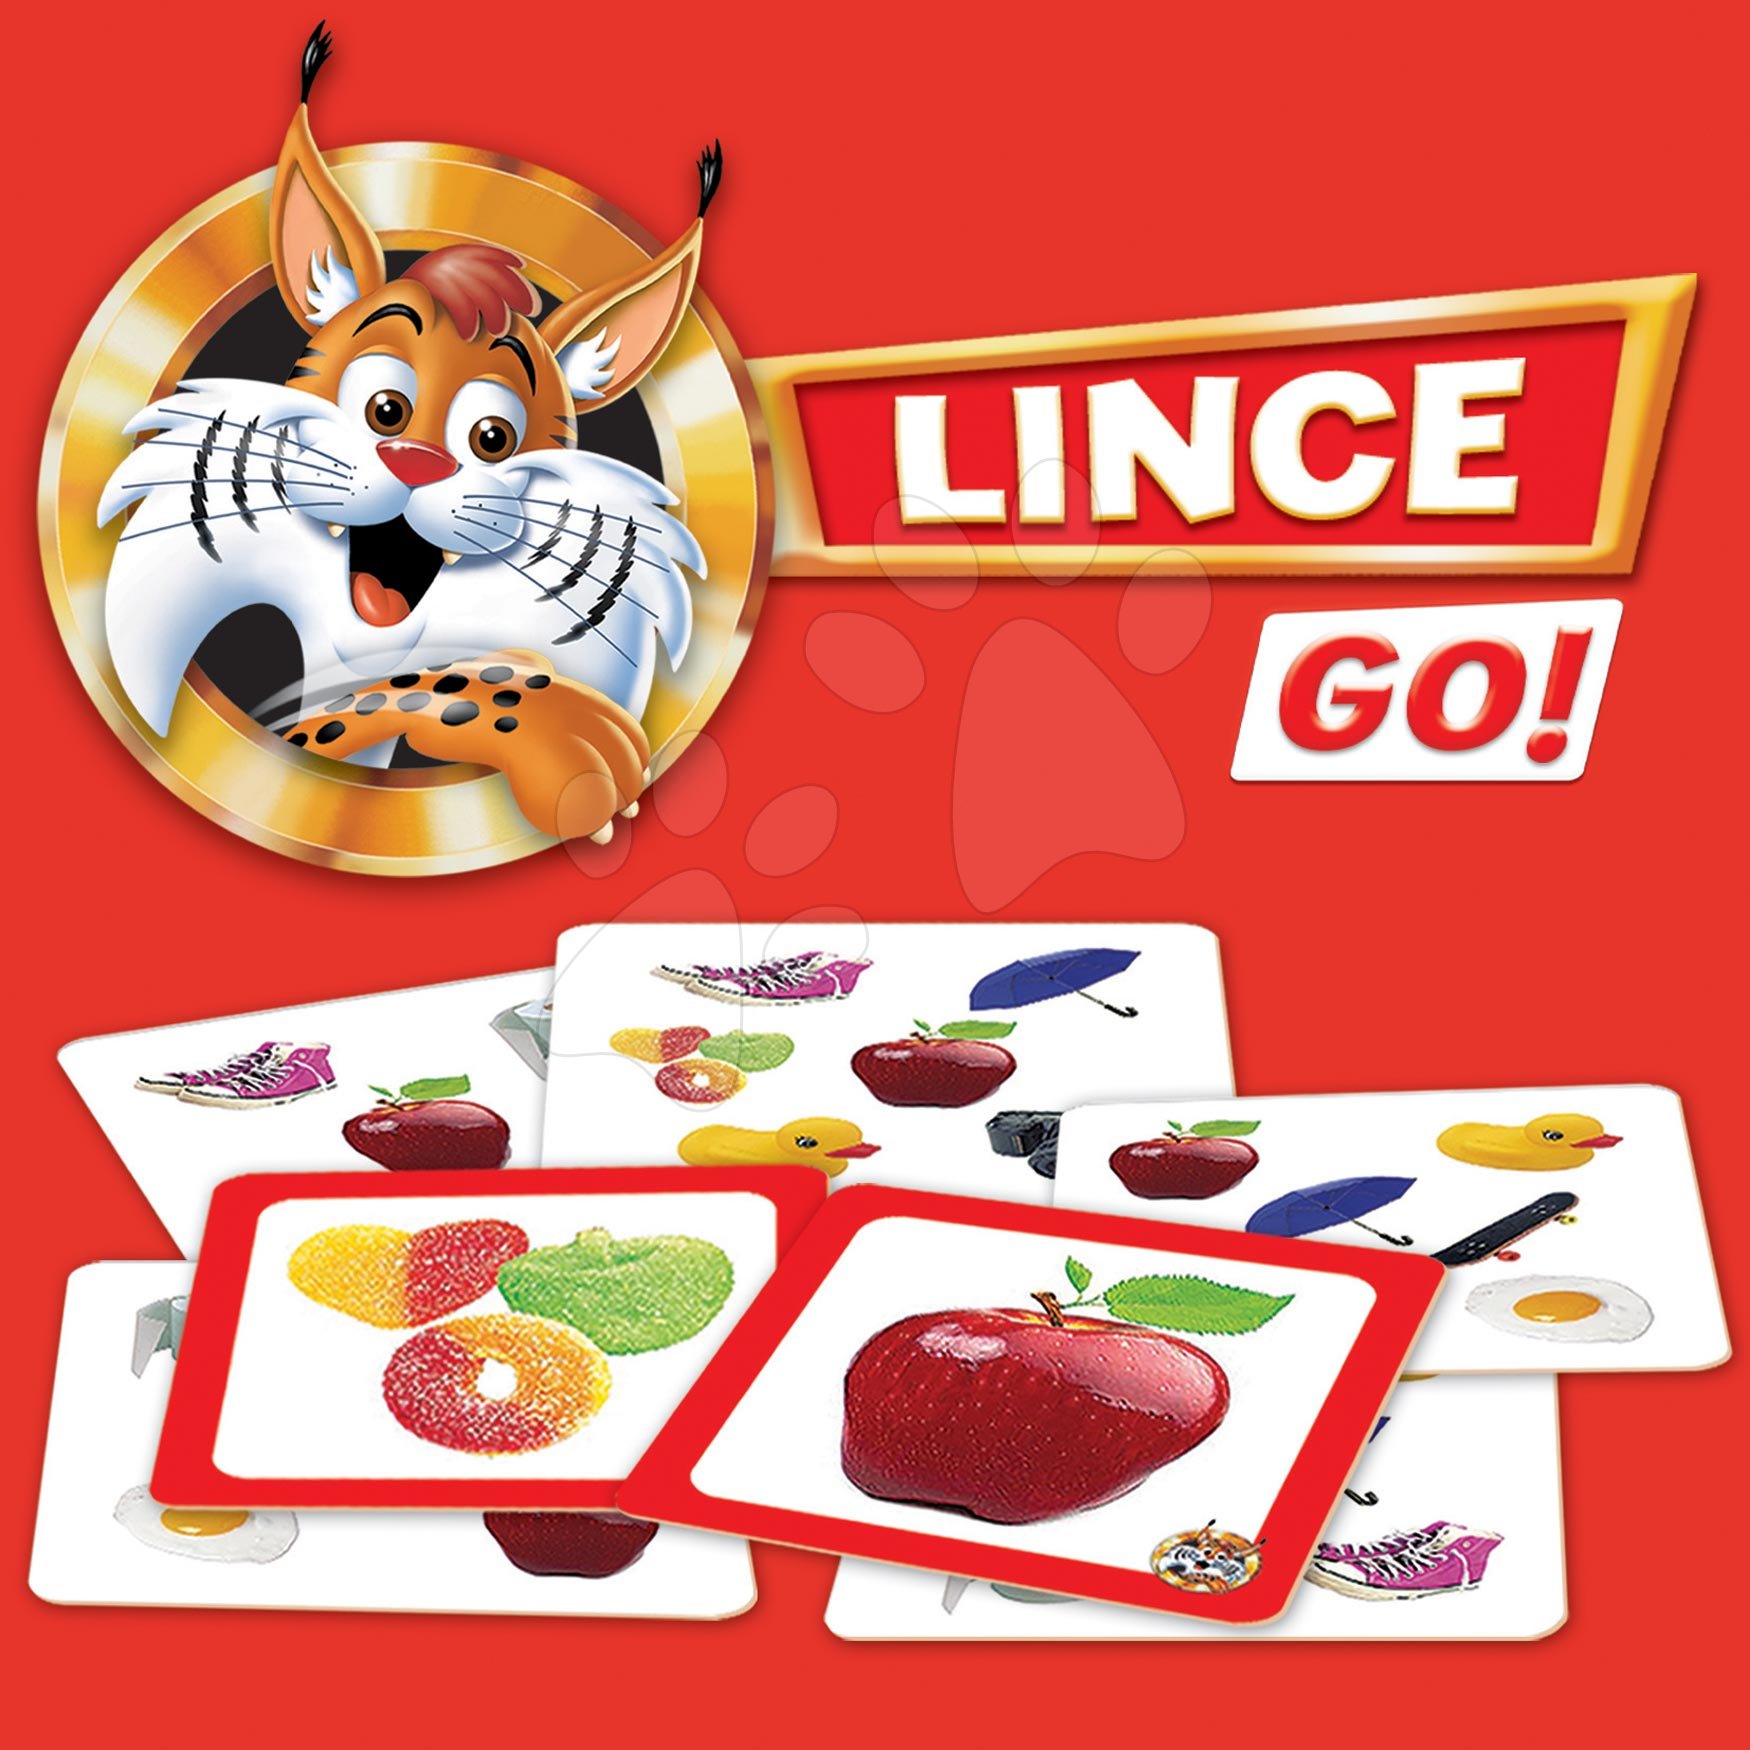 EDUCA Hra Lynx - Disney 100, 70 obrázků